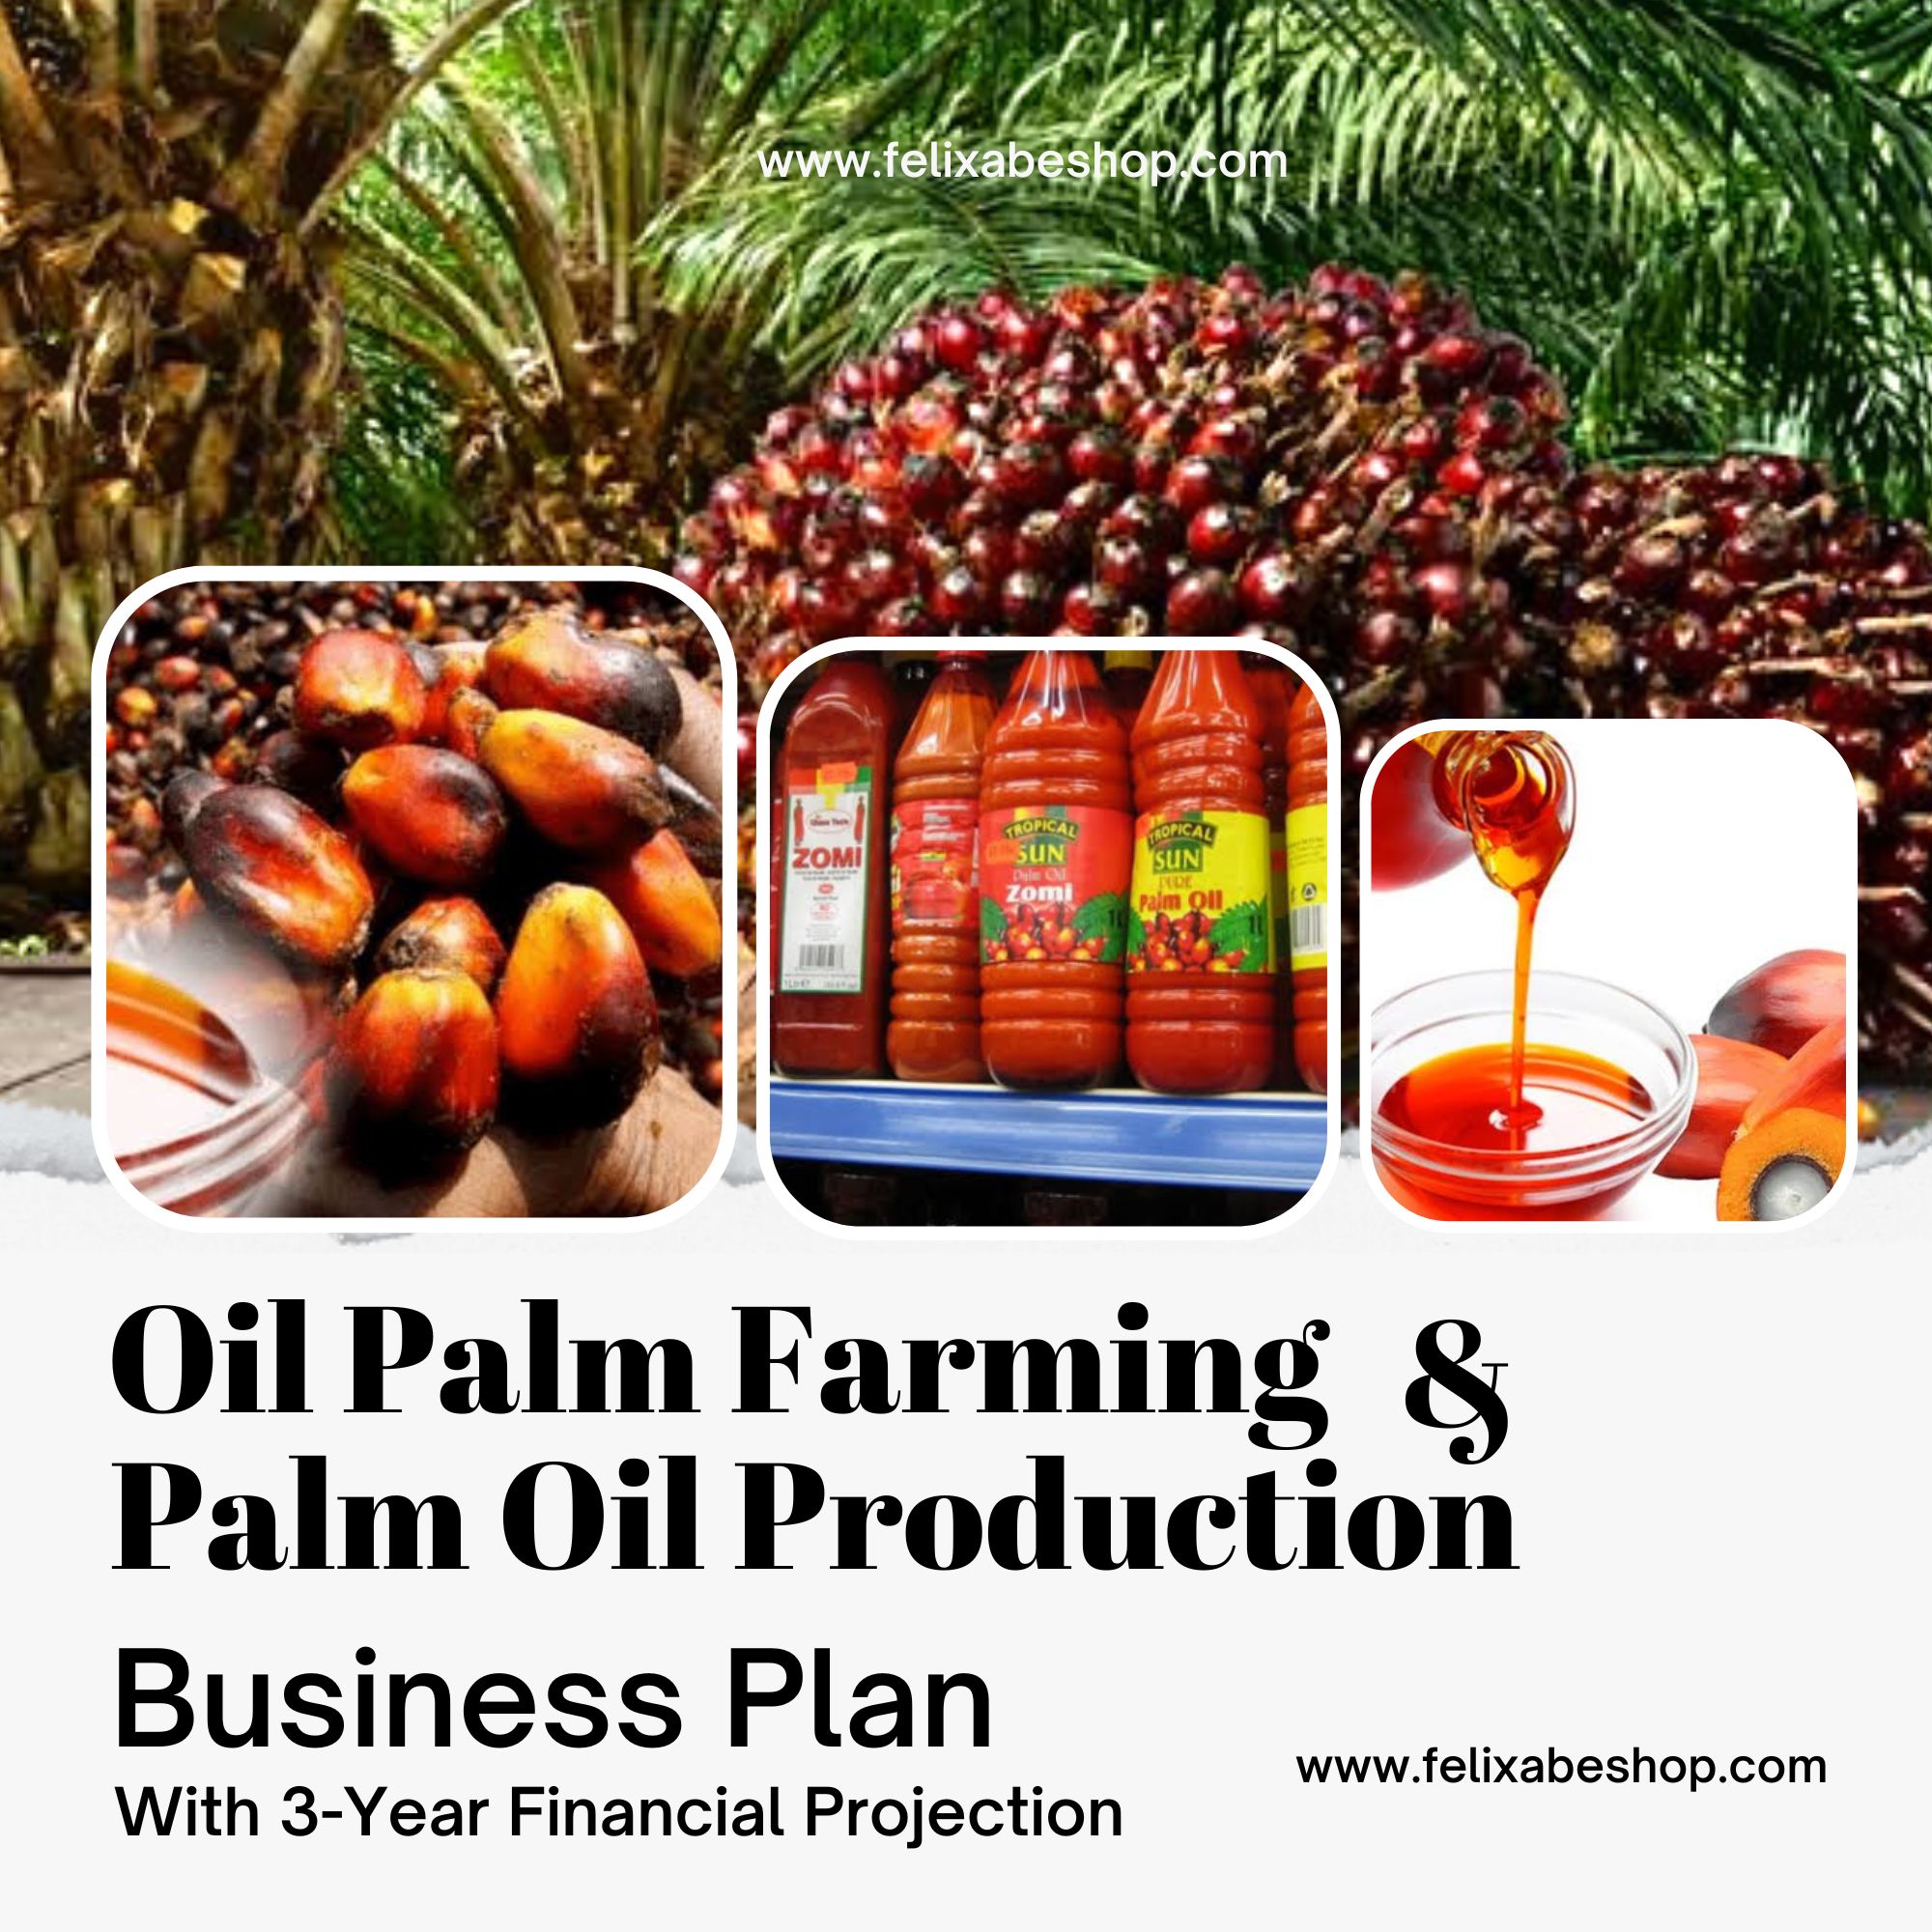 OIL PALM FARMING & PALM OIL PRODUCTION BUSINESS PLAN